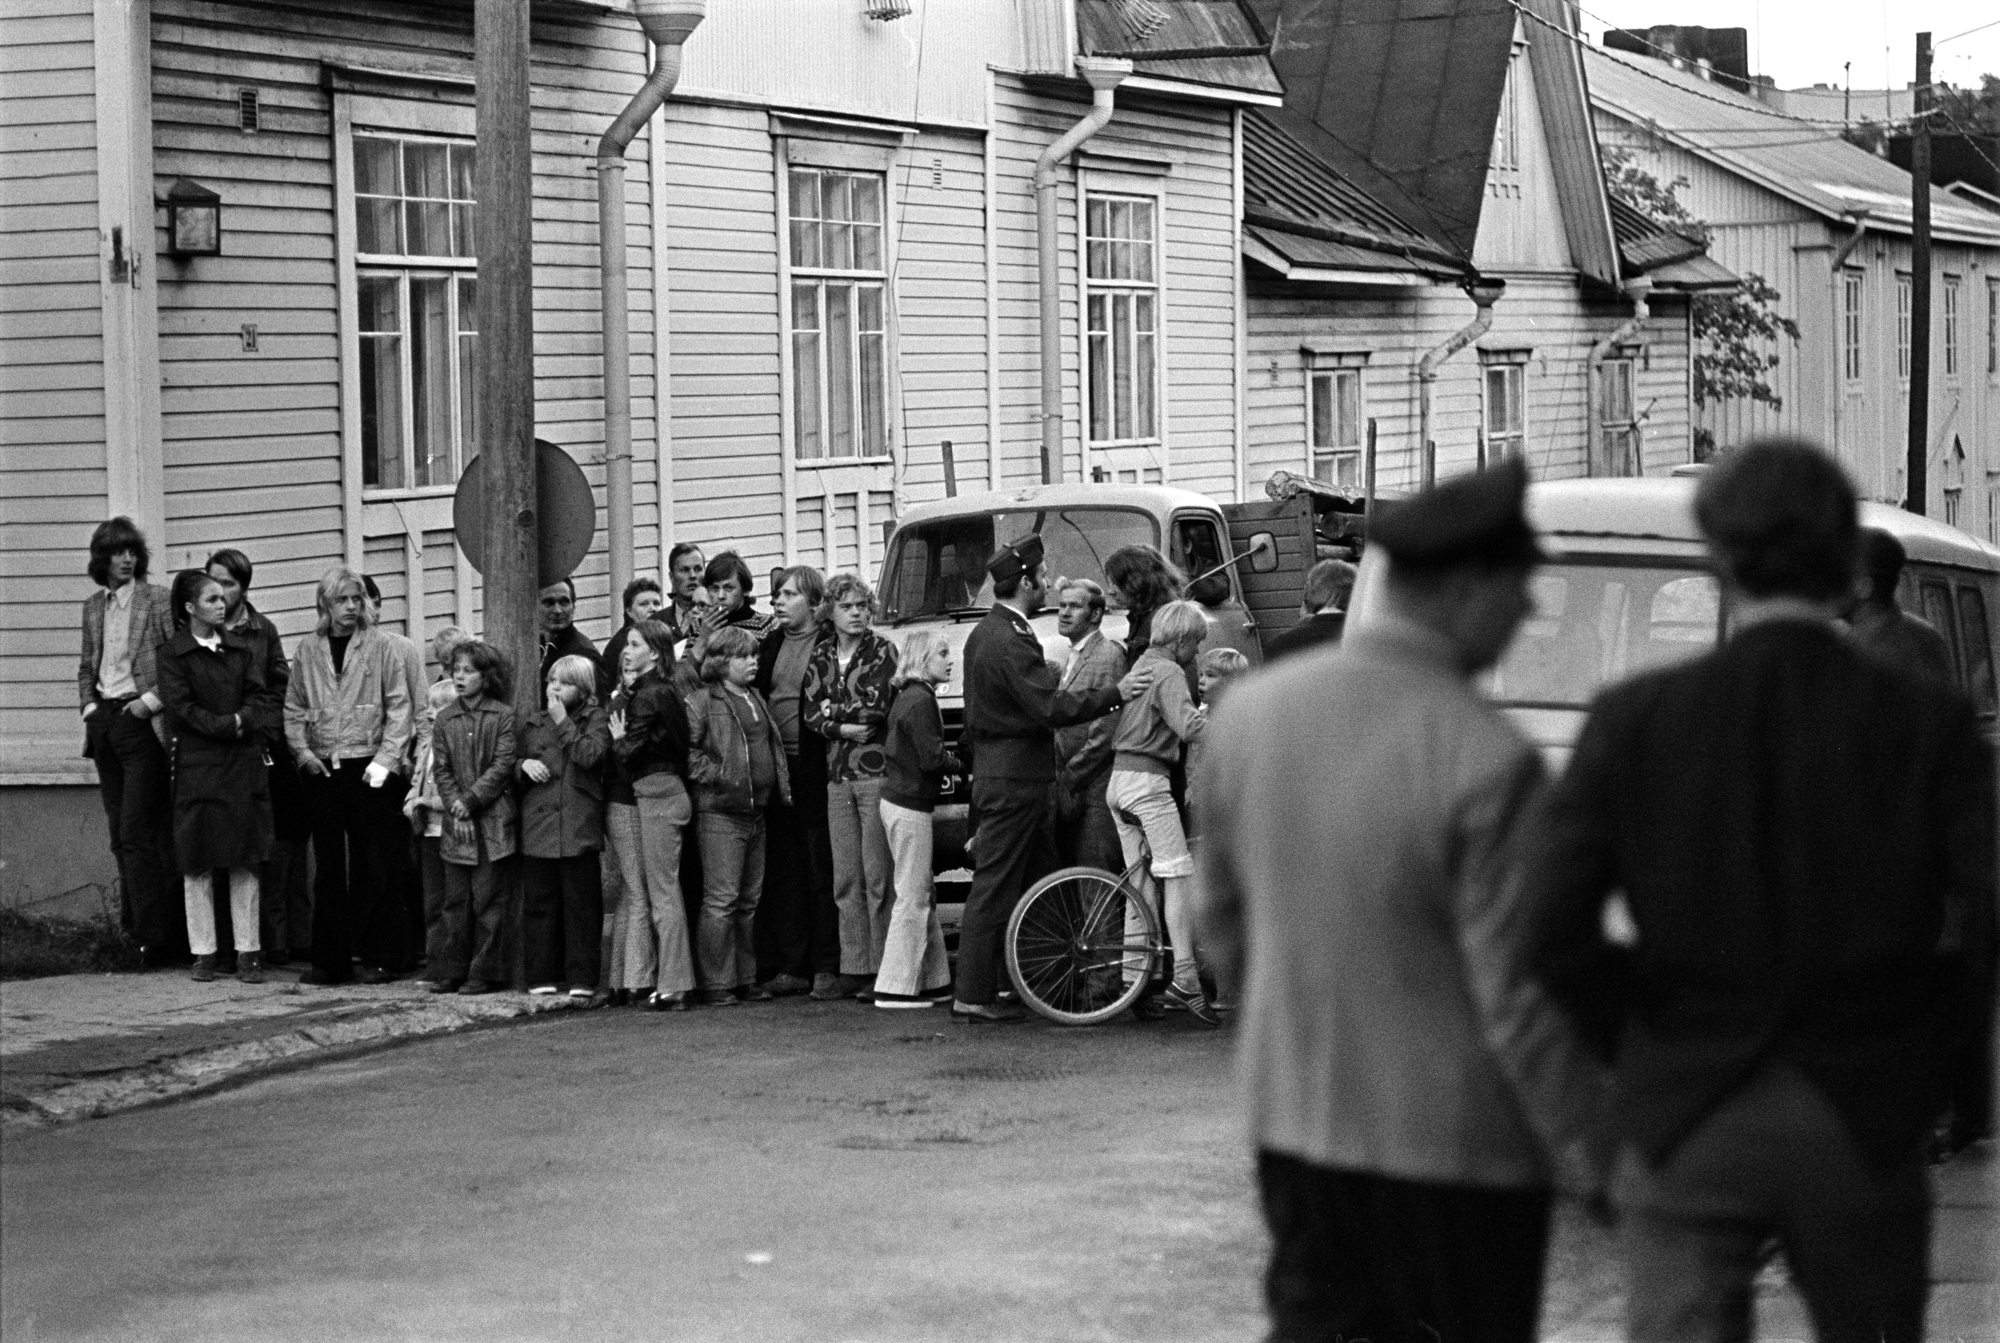  Matti Koivumäki, Helsinki, 13.9.1971, Suomen valokuvataiteen museon kokoelmat.